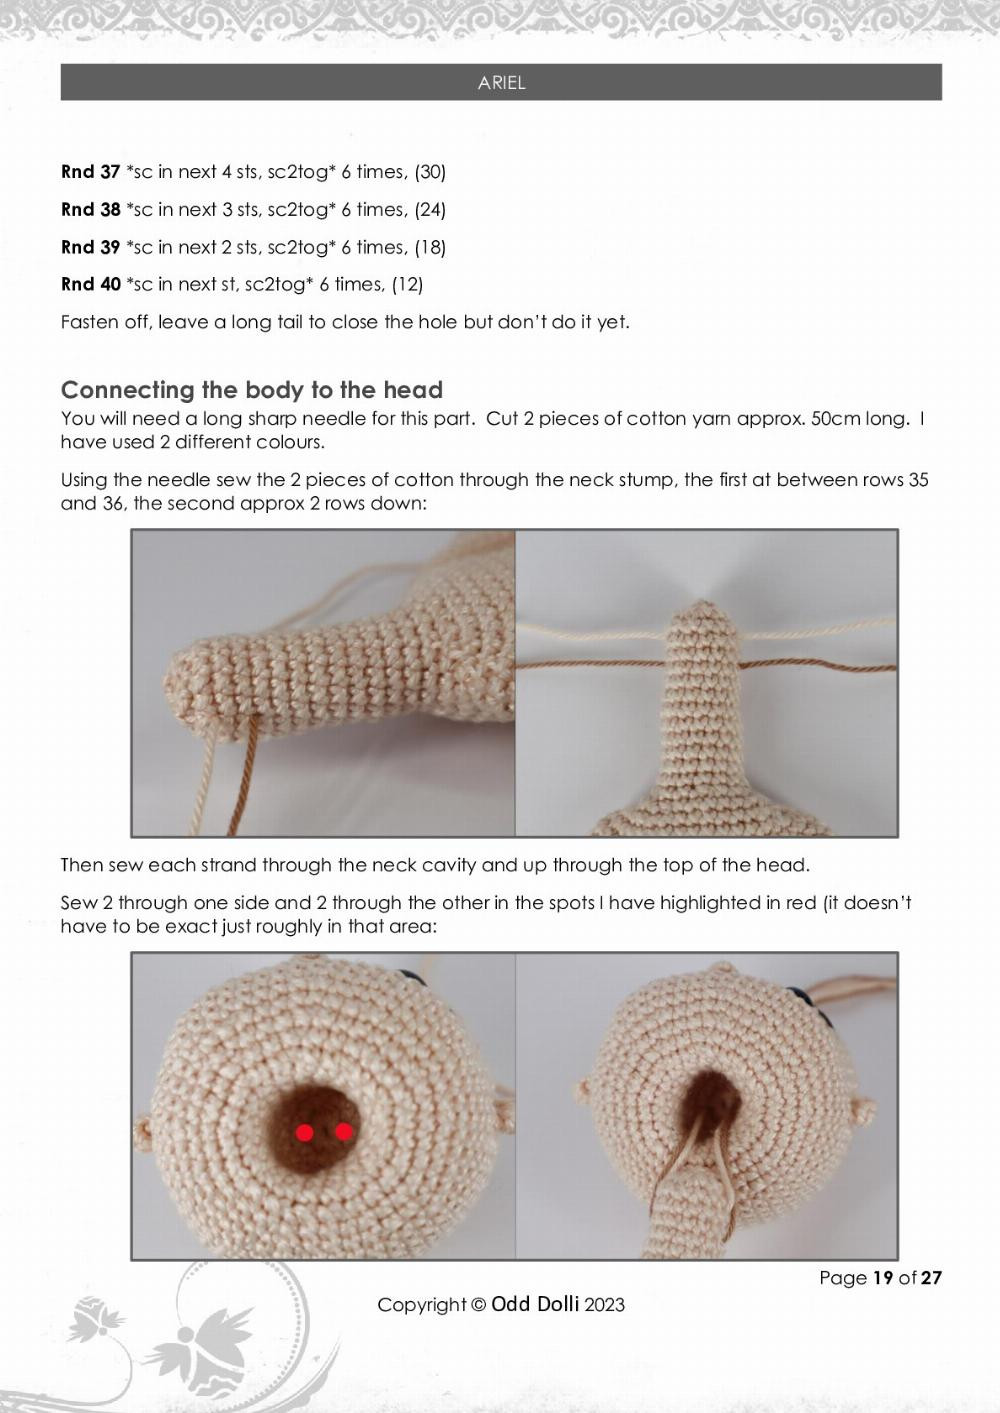 ARIEL JEANINE ANDREA crochet pattern